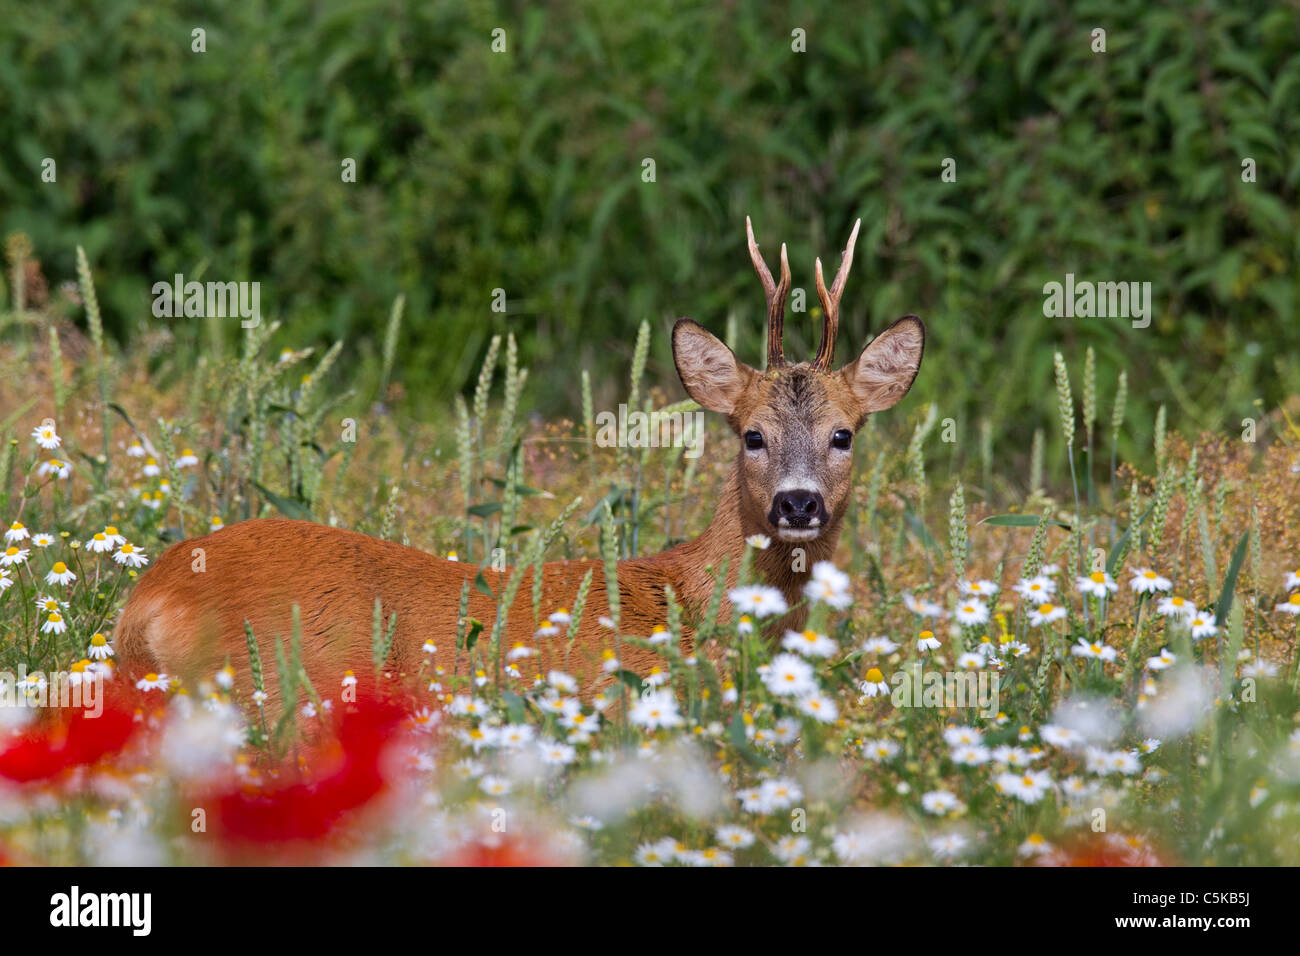 Roe deer (Capreolus capreolus) buck in field with wildflowers, Germany Stock Photo